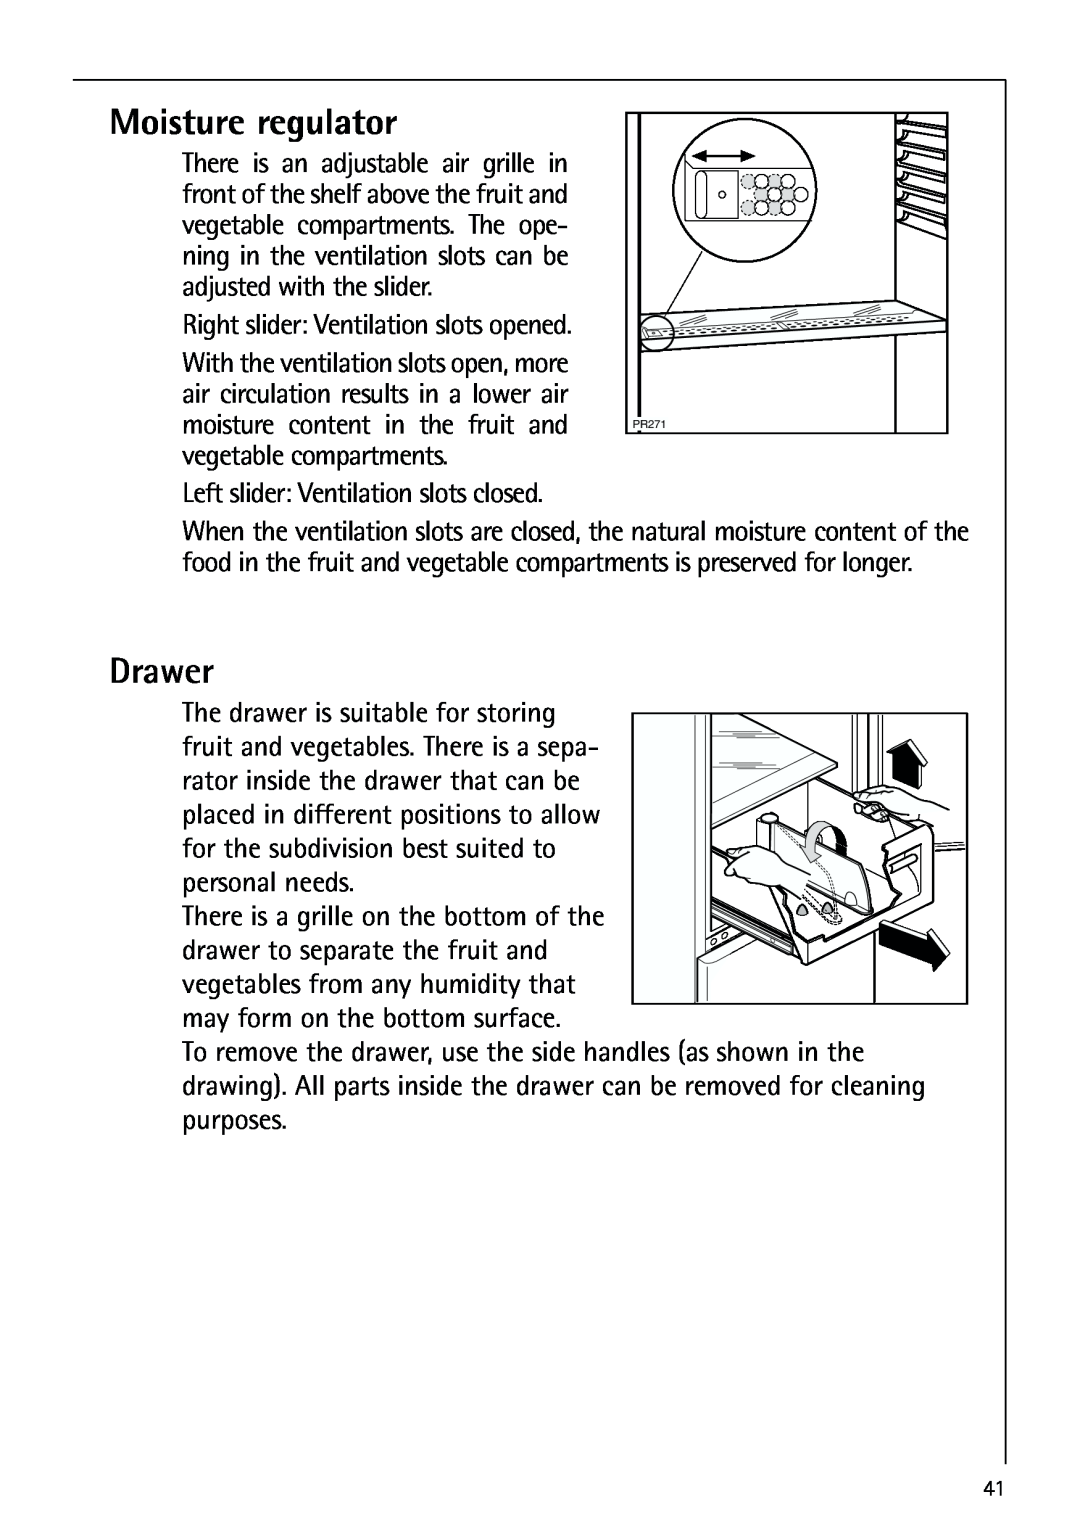 AEG 80318-5 KG user manual Moisture regulator, Drawer 